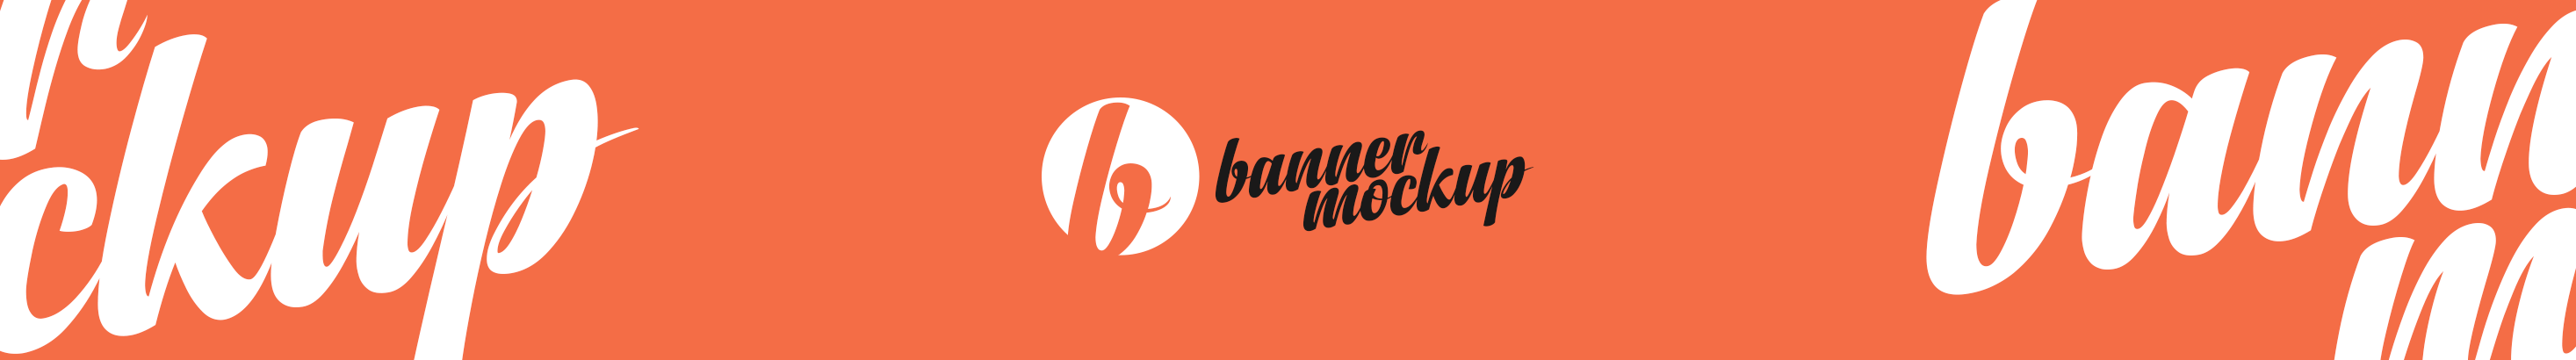 Banner Mockup's profile banner